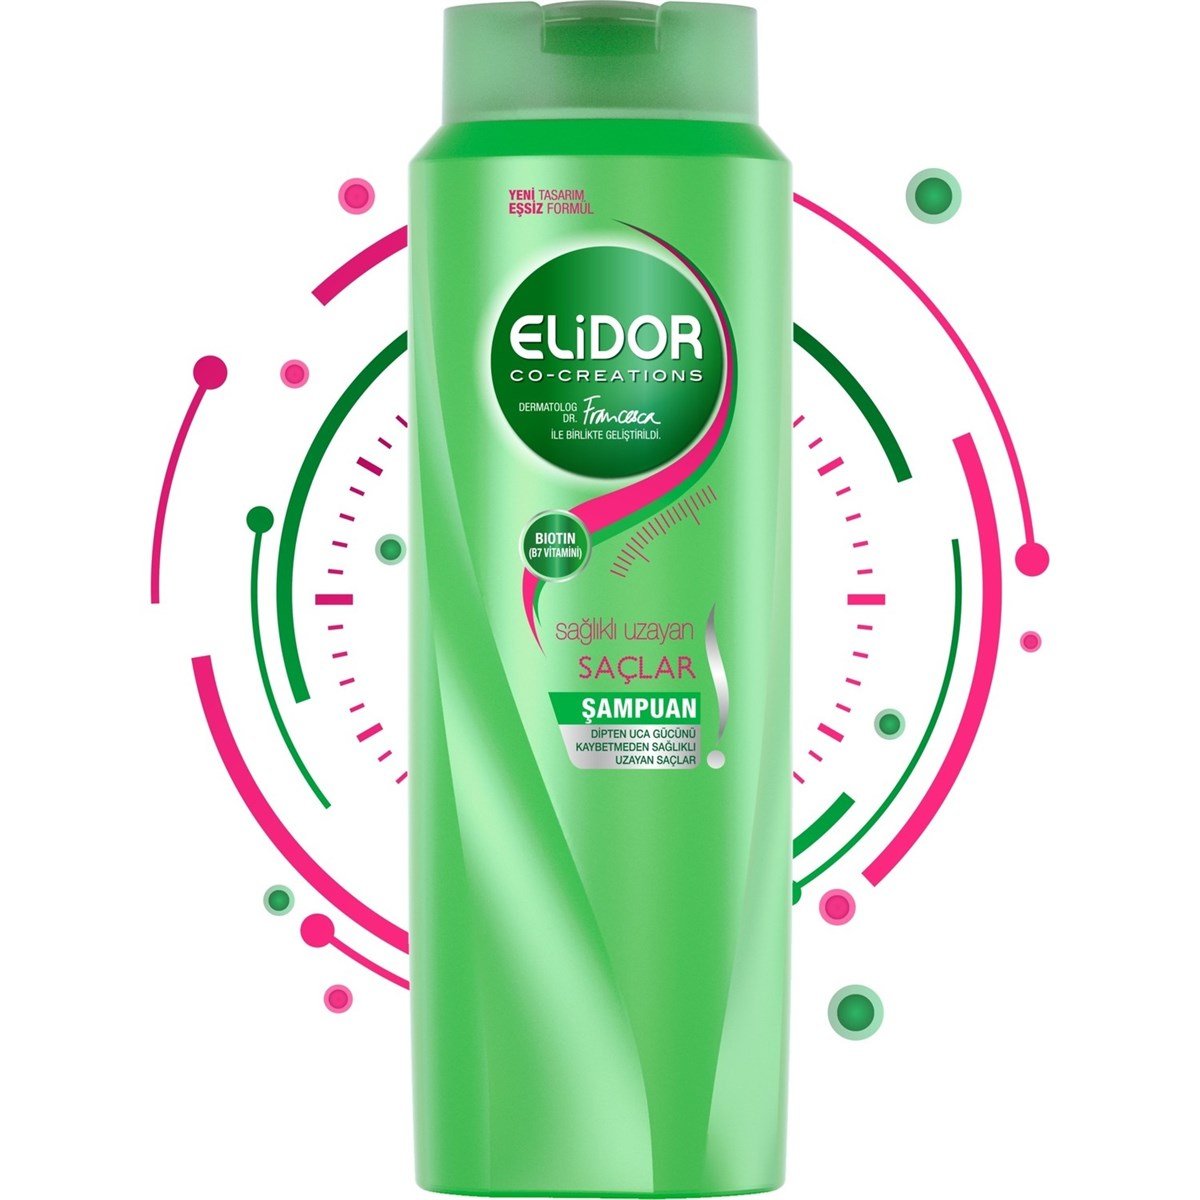 Elidor Sağlıklı Uzayan Saçlar Şampuan 550 ml